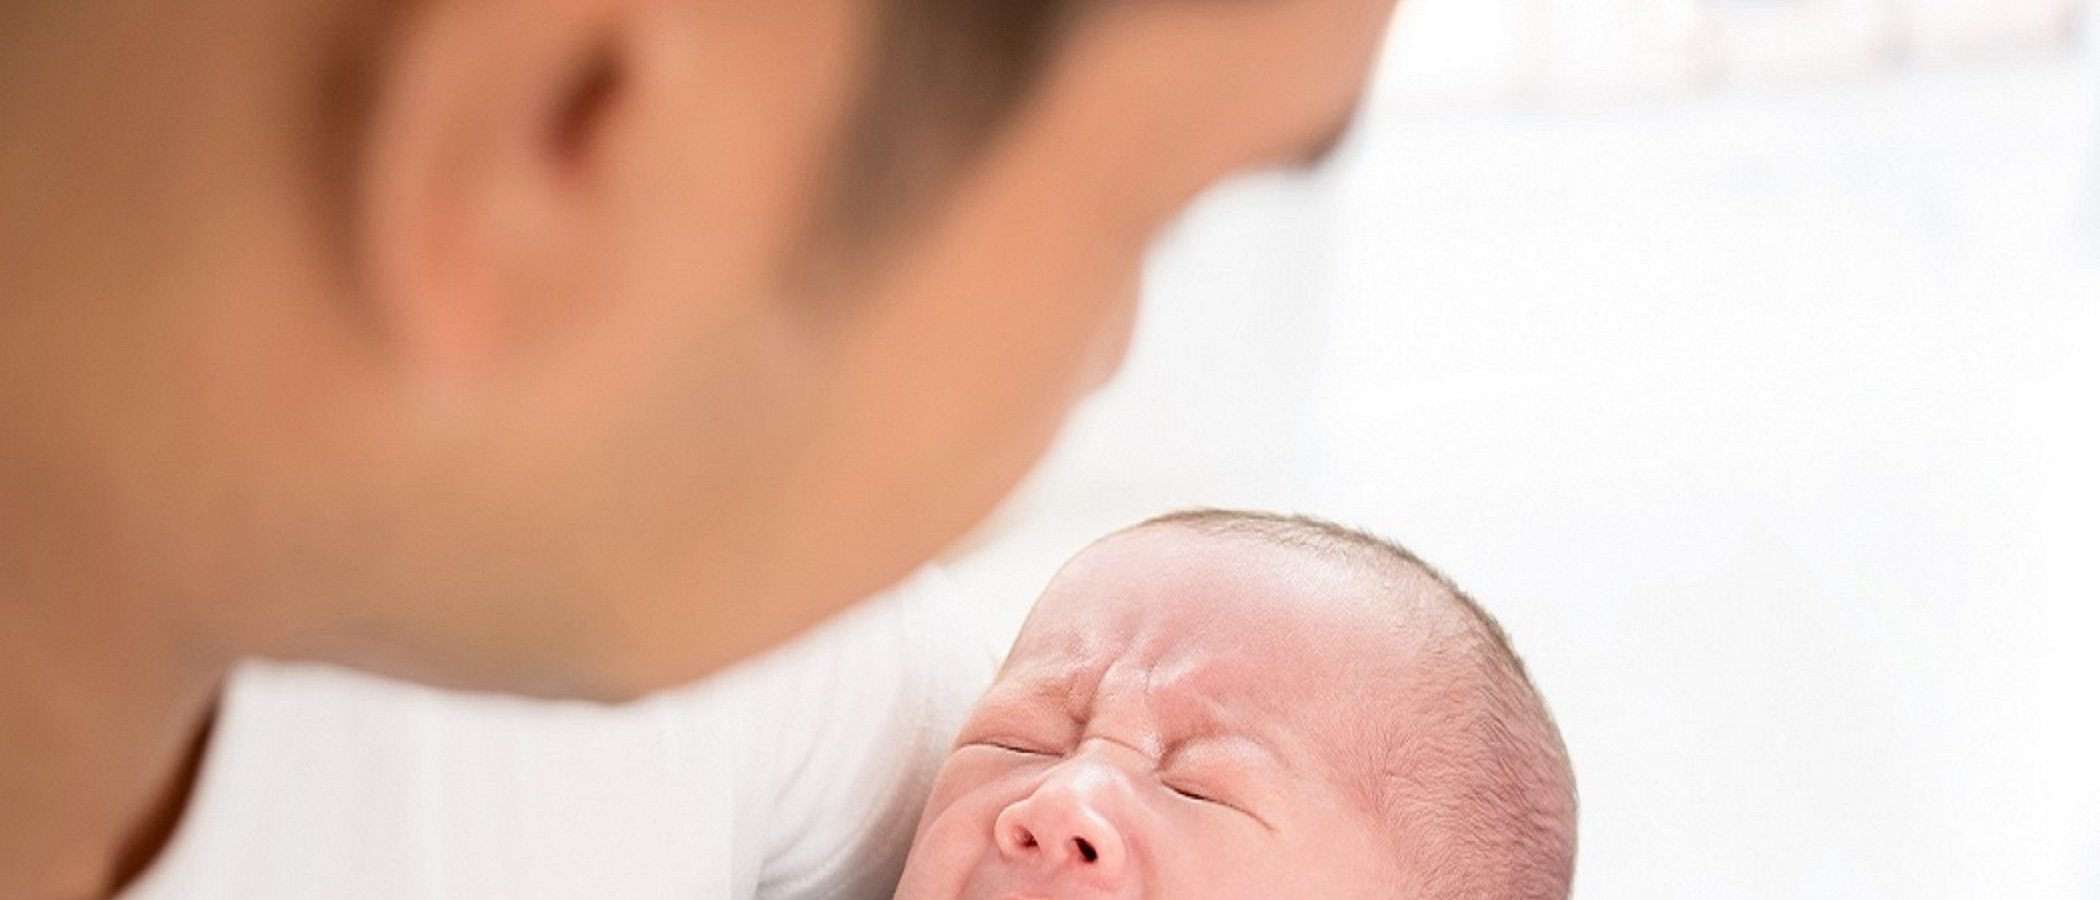 Si tu bebé tiene reflujo, ¿debes ponerle boca abajo?